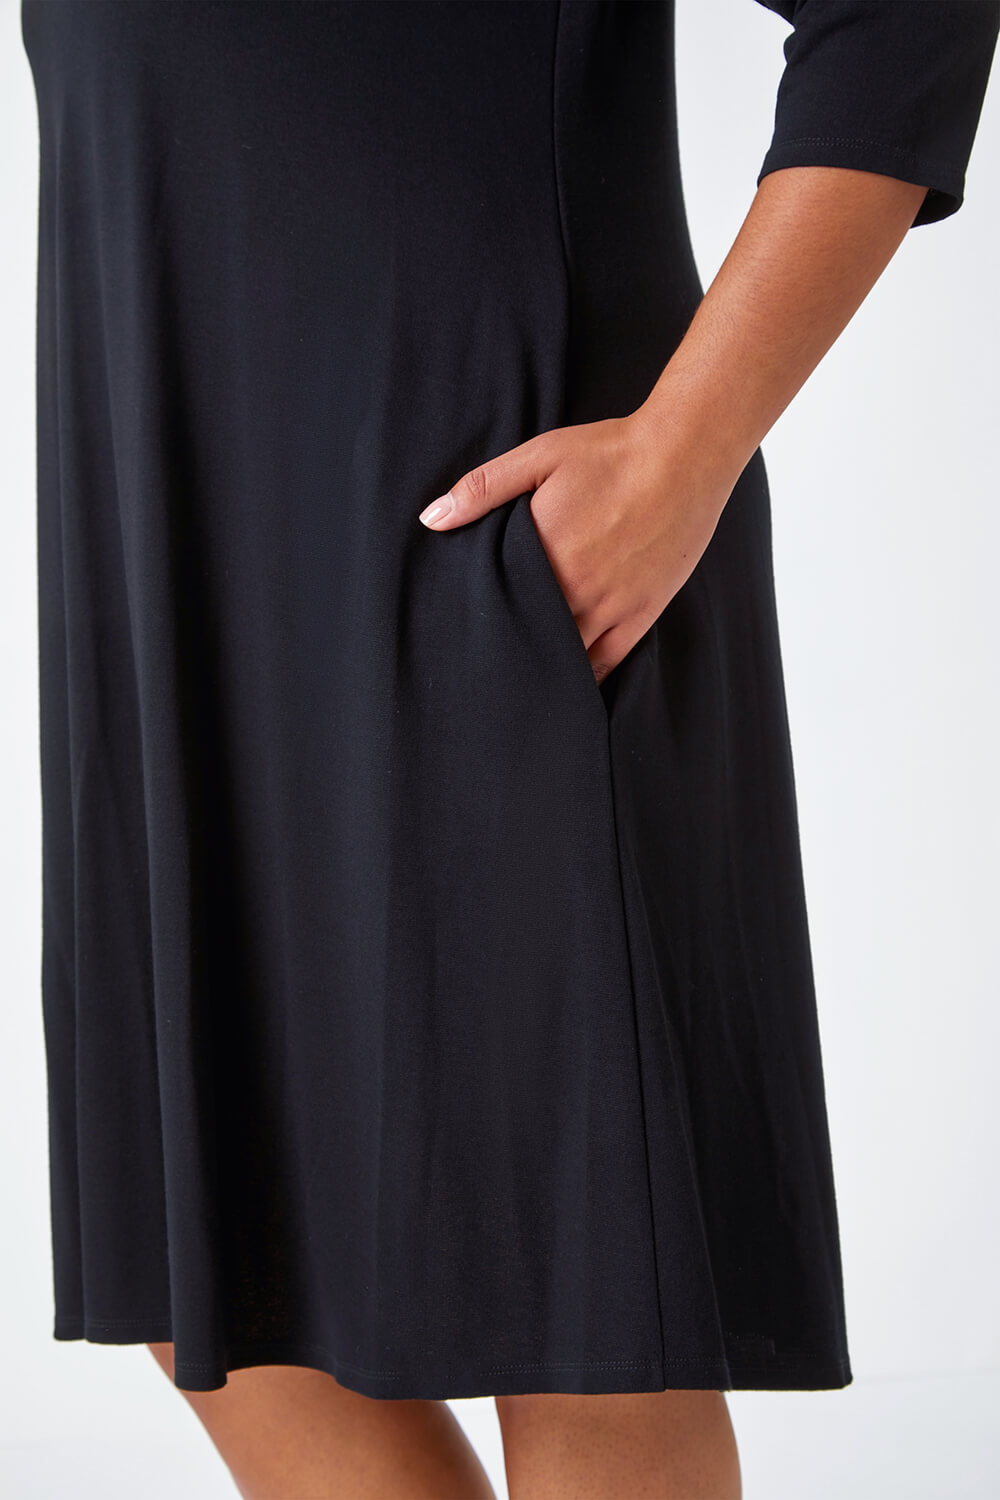 Black Curve Pocket Detail Swing Stretch Dress , Image 5 of 5